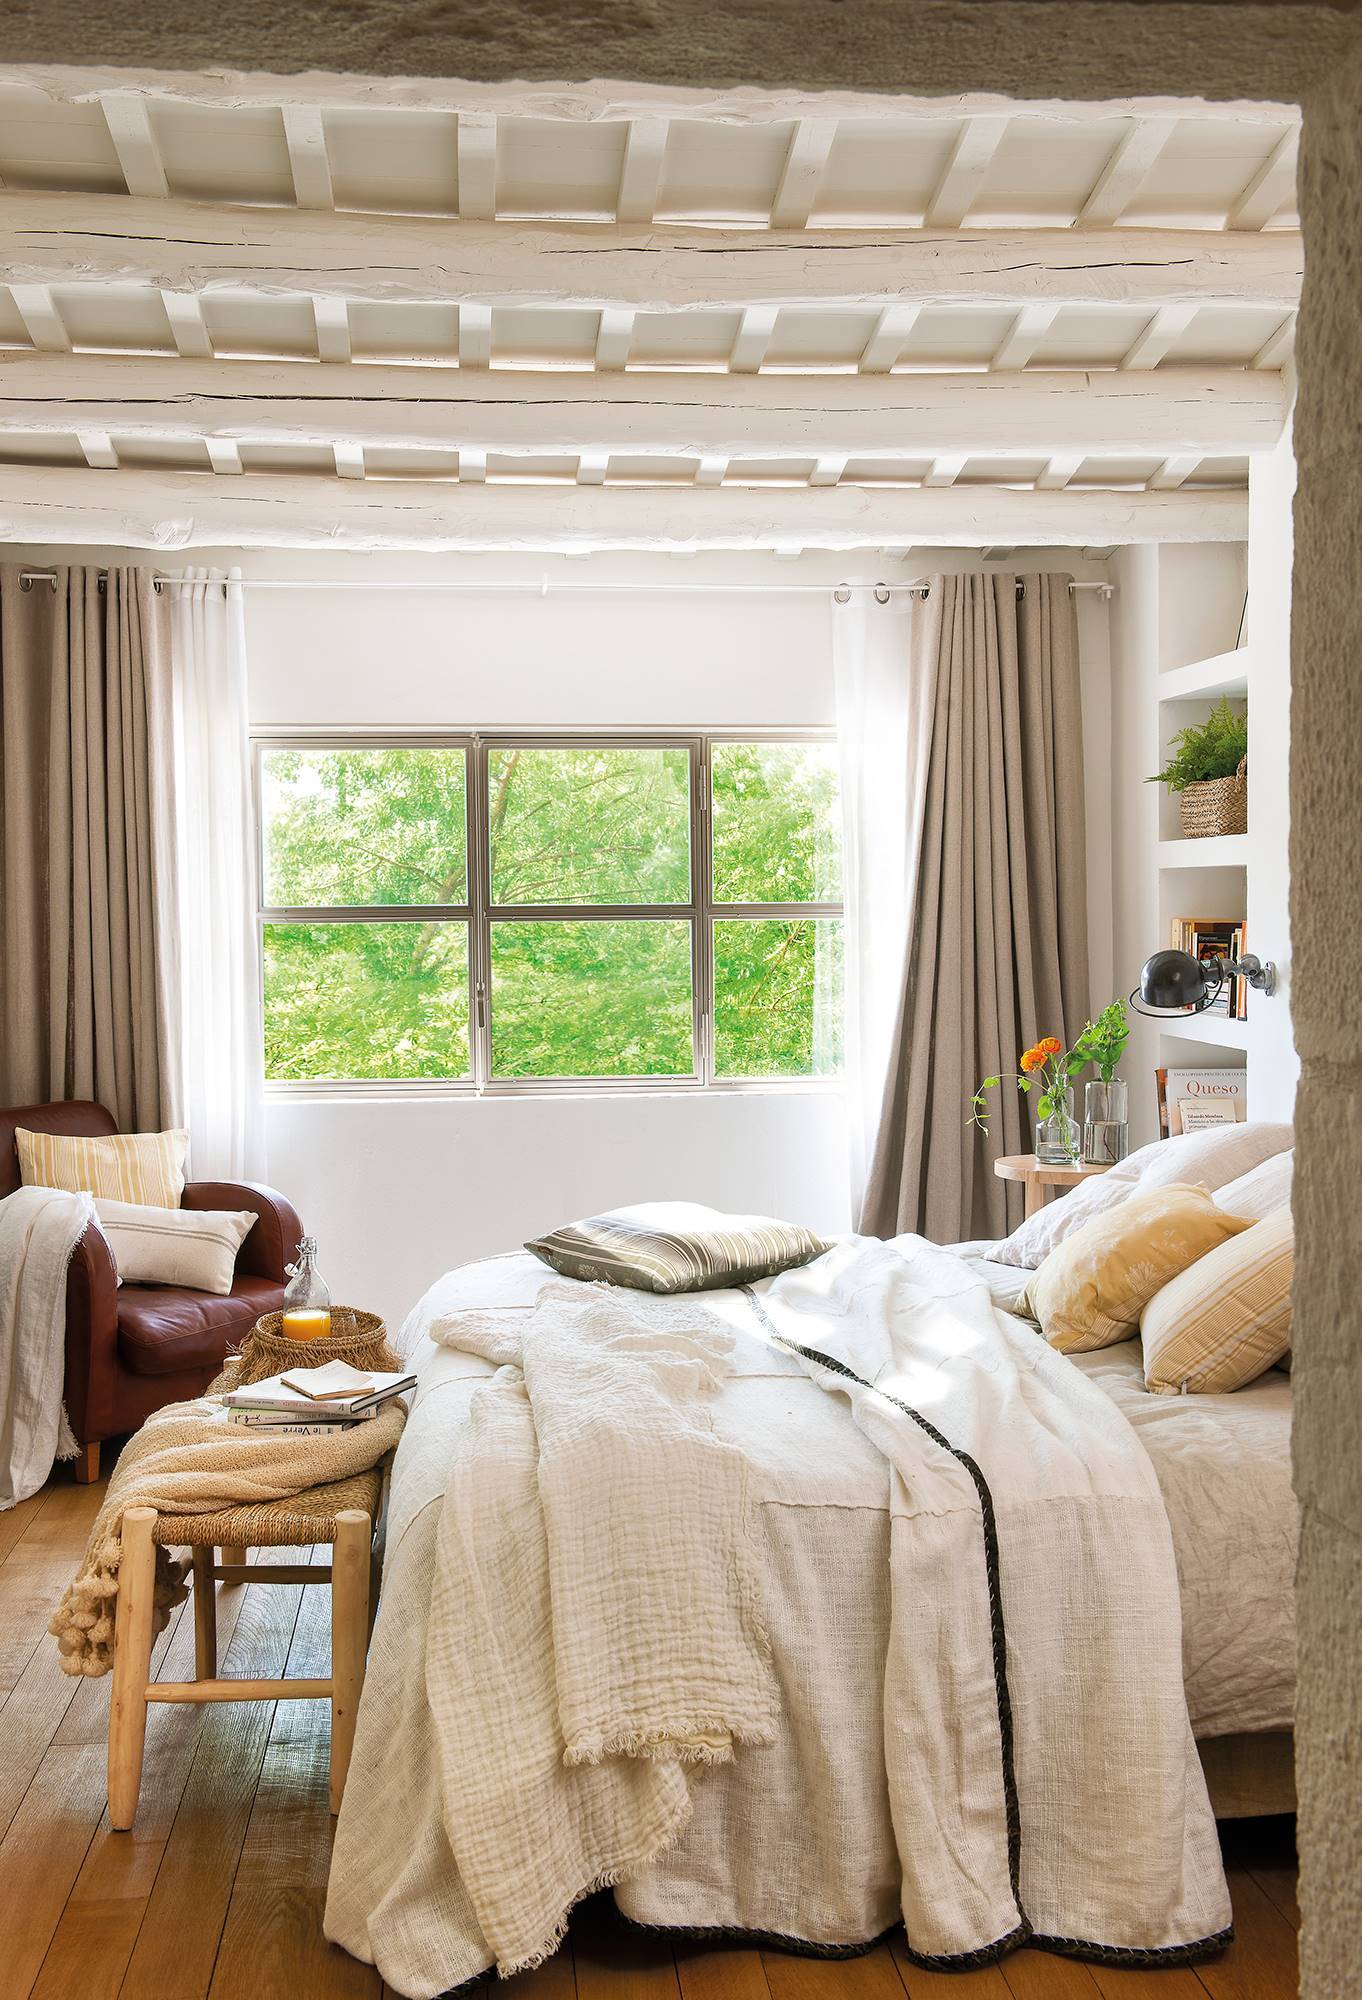 Dormitorio en blanco con vigas de madera pintadas_00485480 